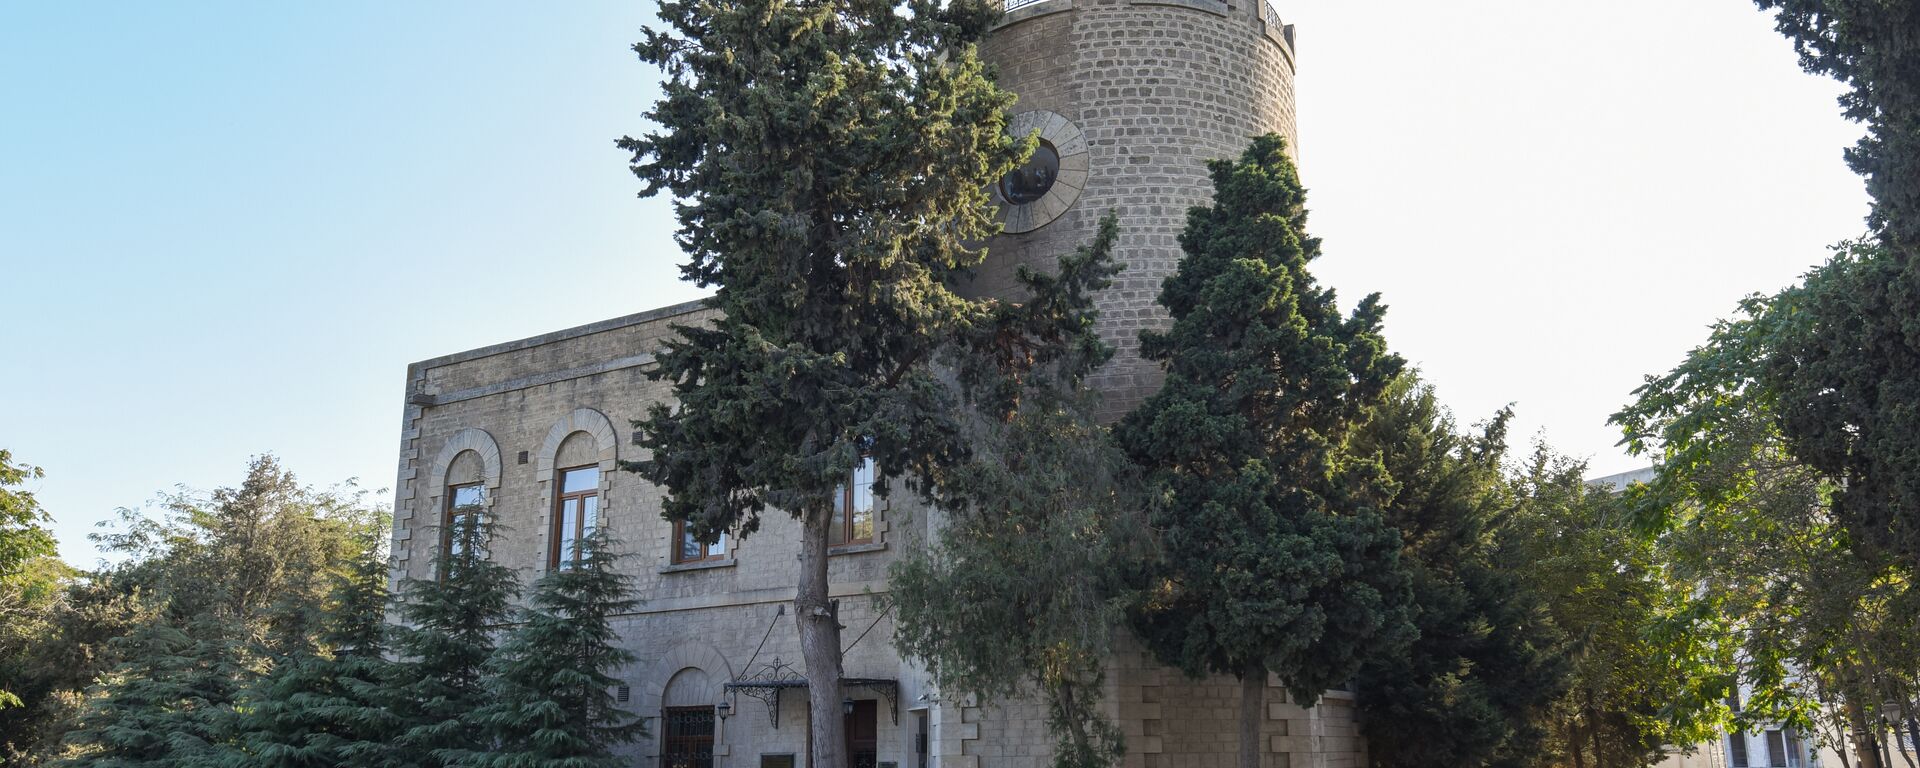 Villa Petrolea — резиденции братьев Нобель в Баку - Sputnik Азербайджан, 1920, 24.11.2018